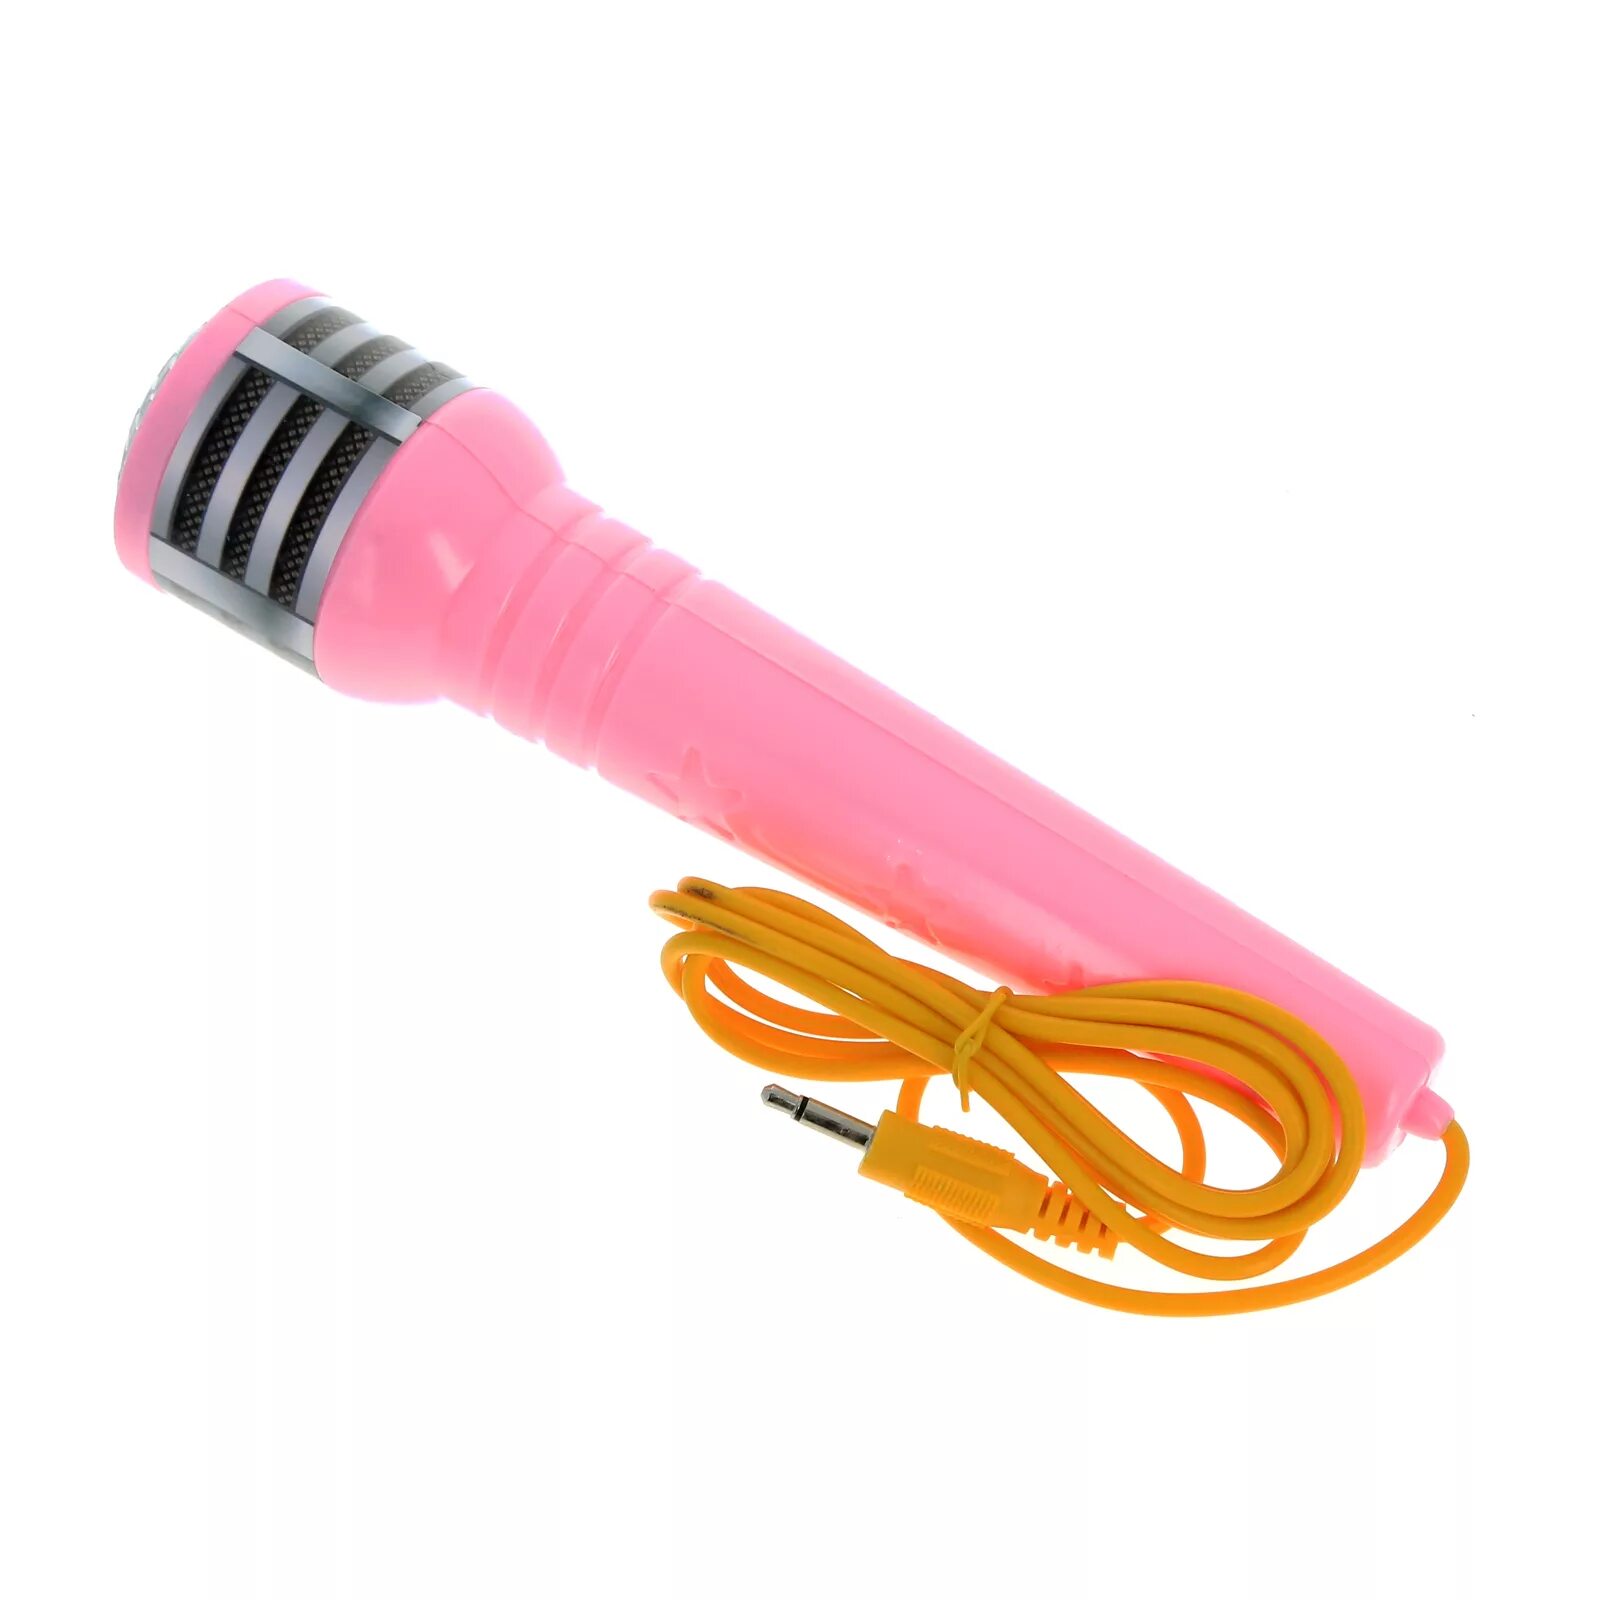 Микрофон, розовый. Игрушка микрофон караоке. Розовый маленький микрофон. Микрофон розовый детский. Flash микрофон